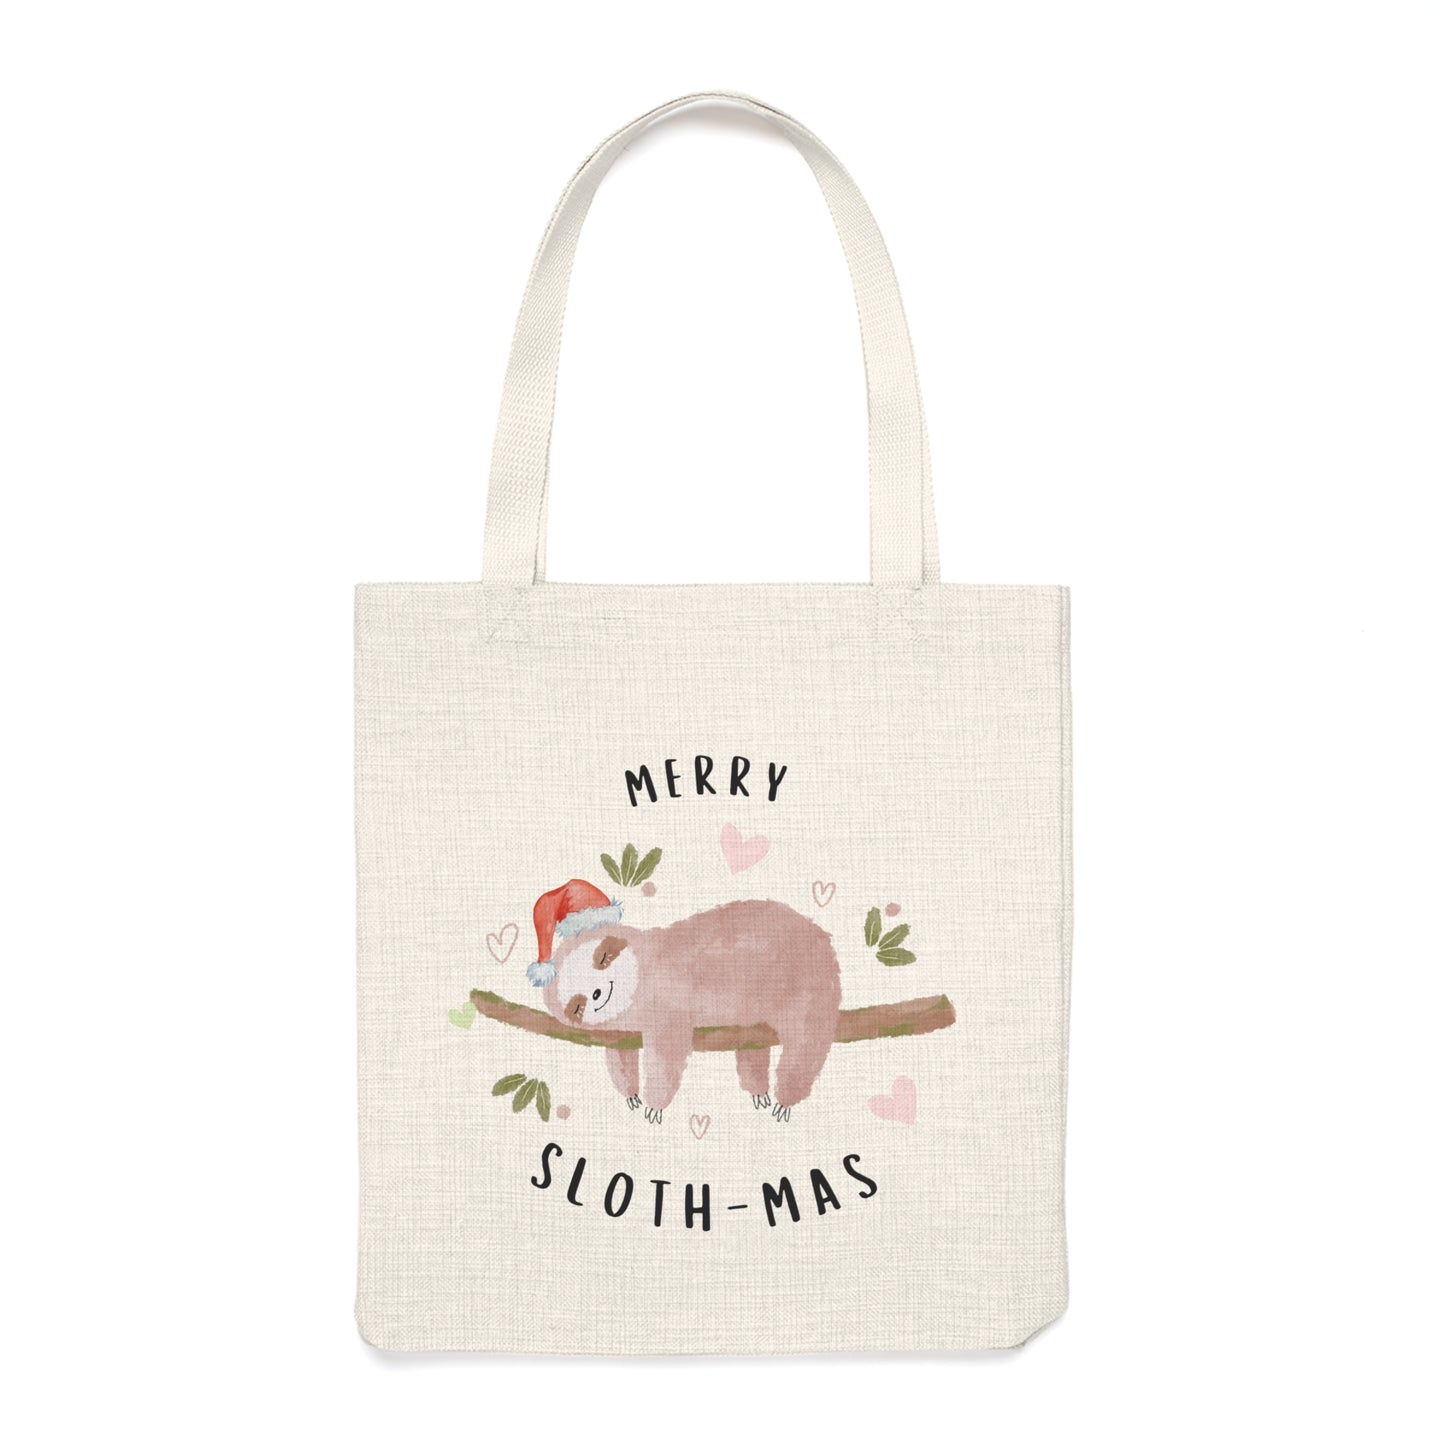 Christmas Tote Bag - Merry Sloth-mas!